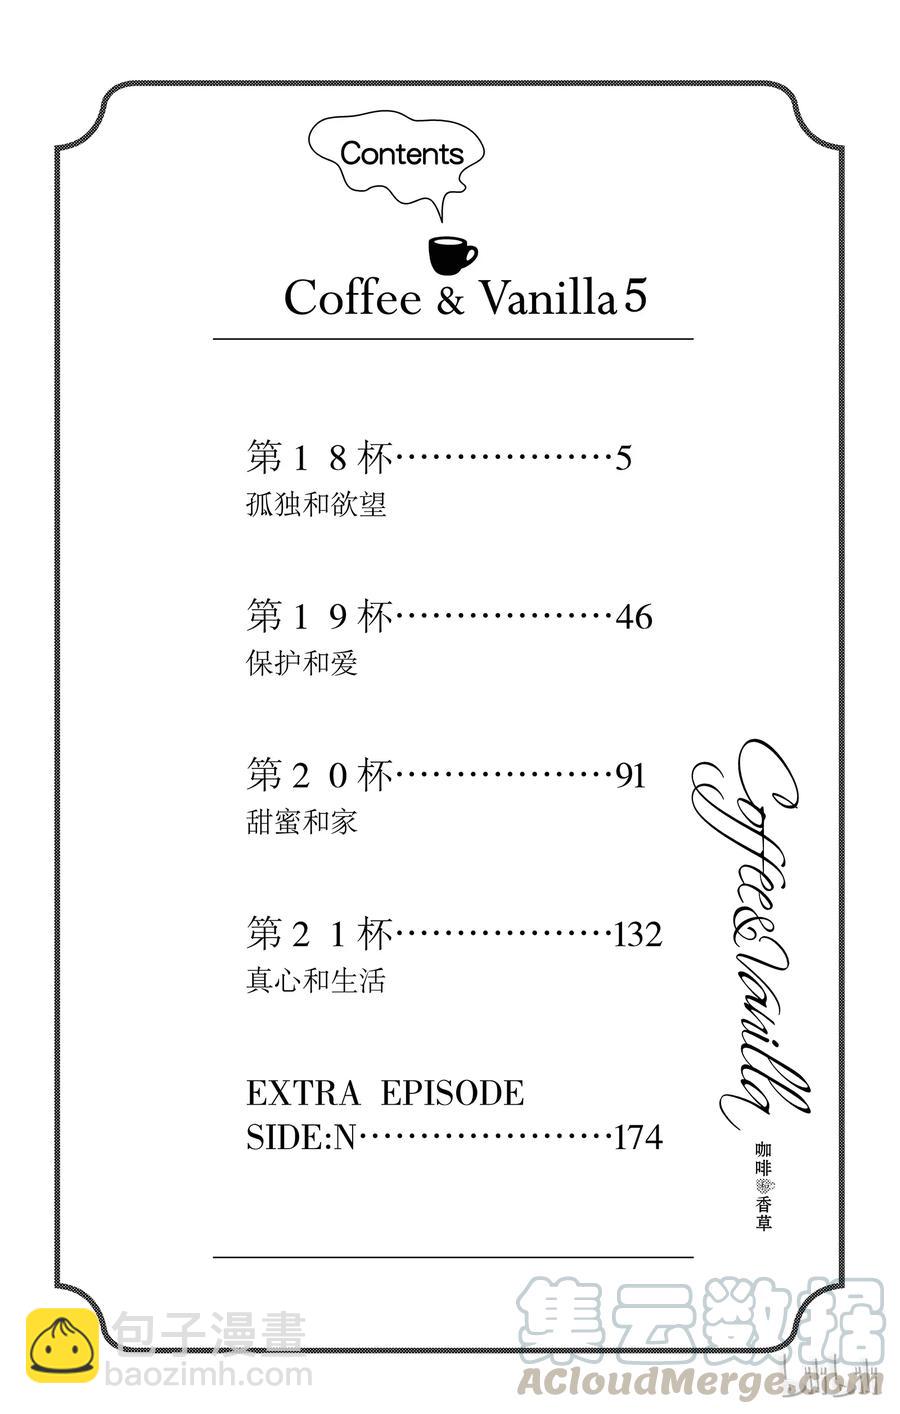 Coffee & Vanilla 咖啡和香草 - 18 孤獨和慾望 - 5